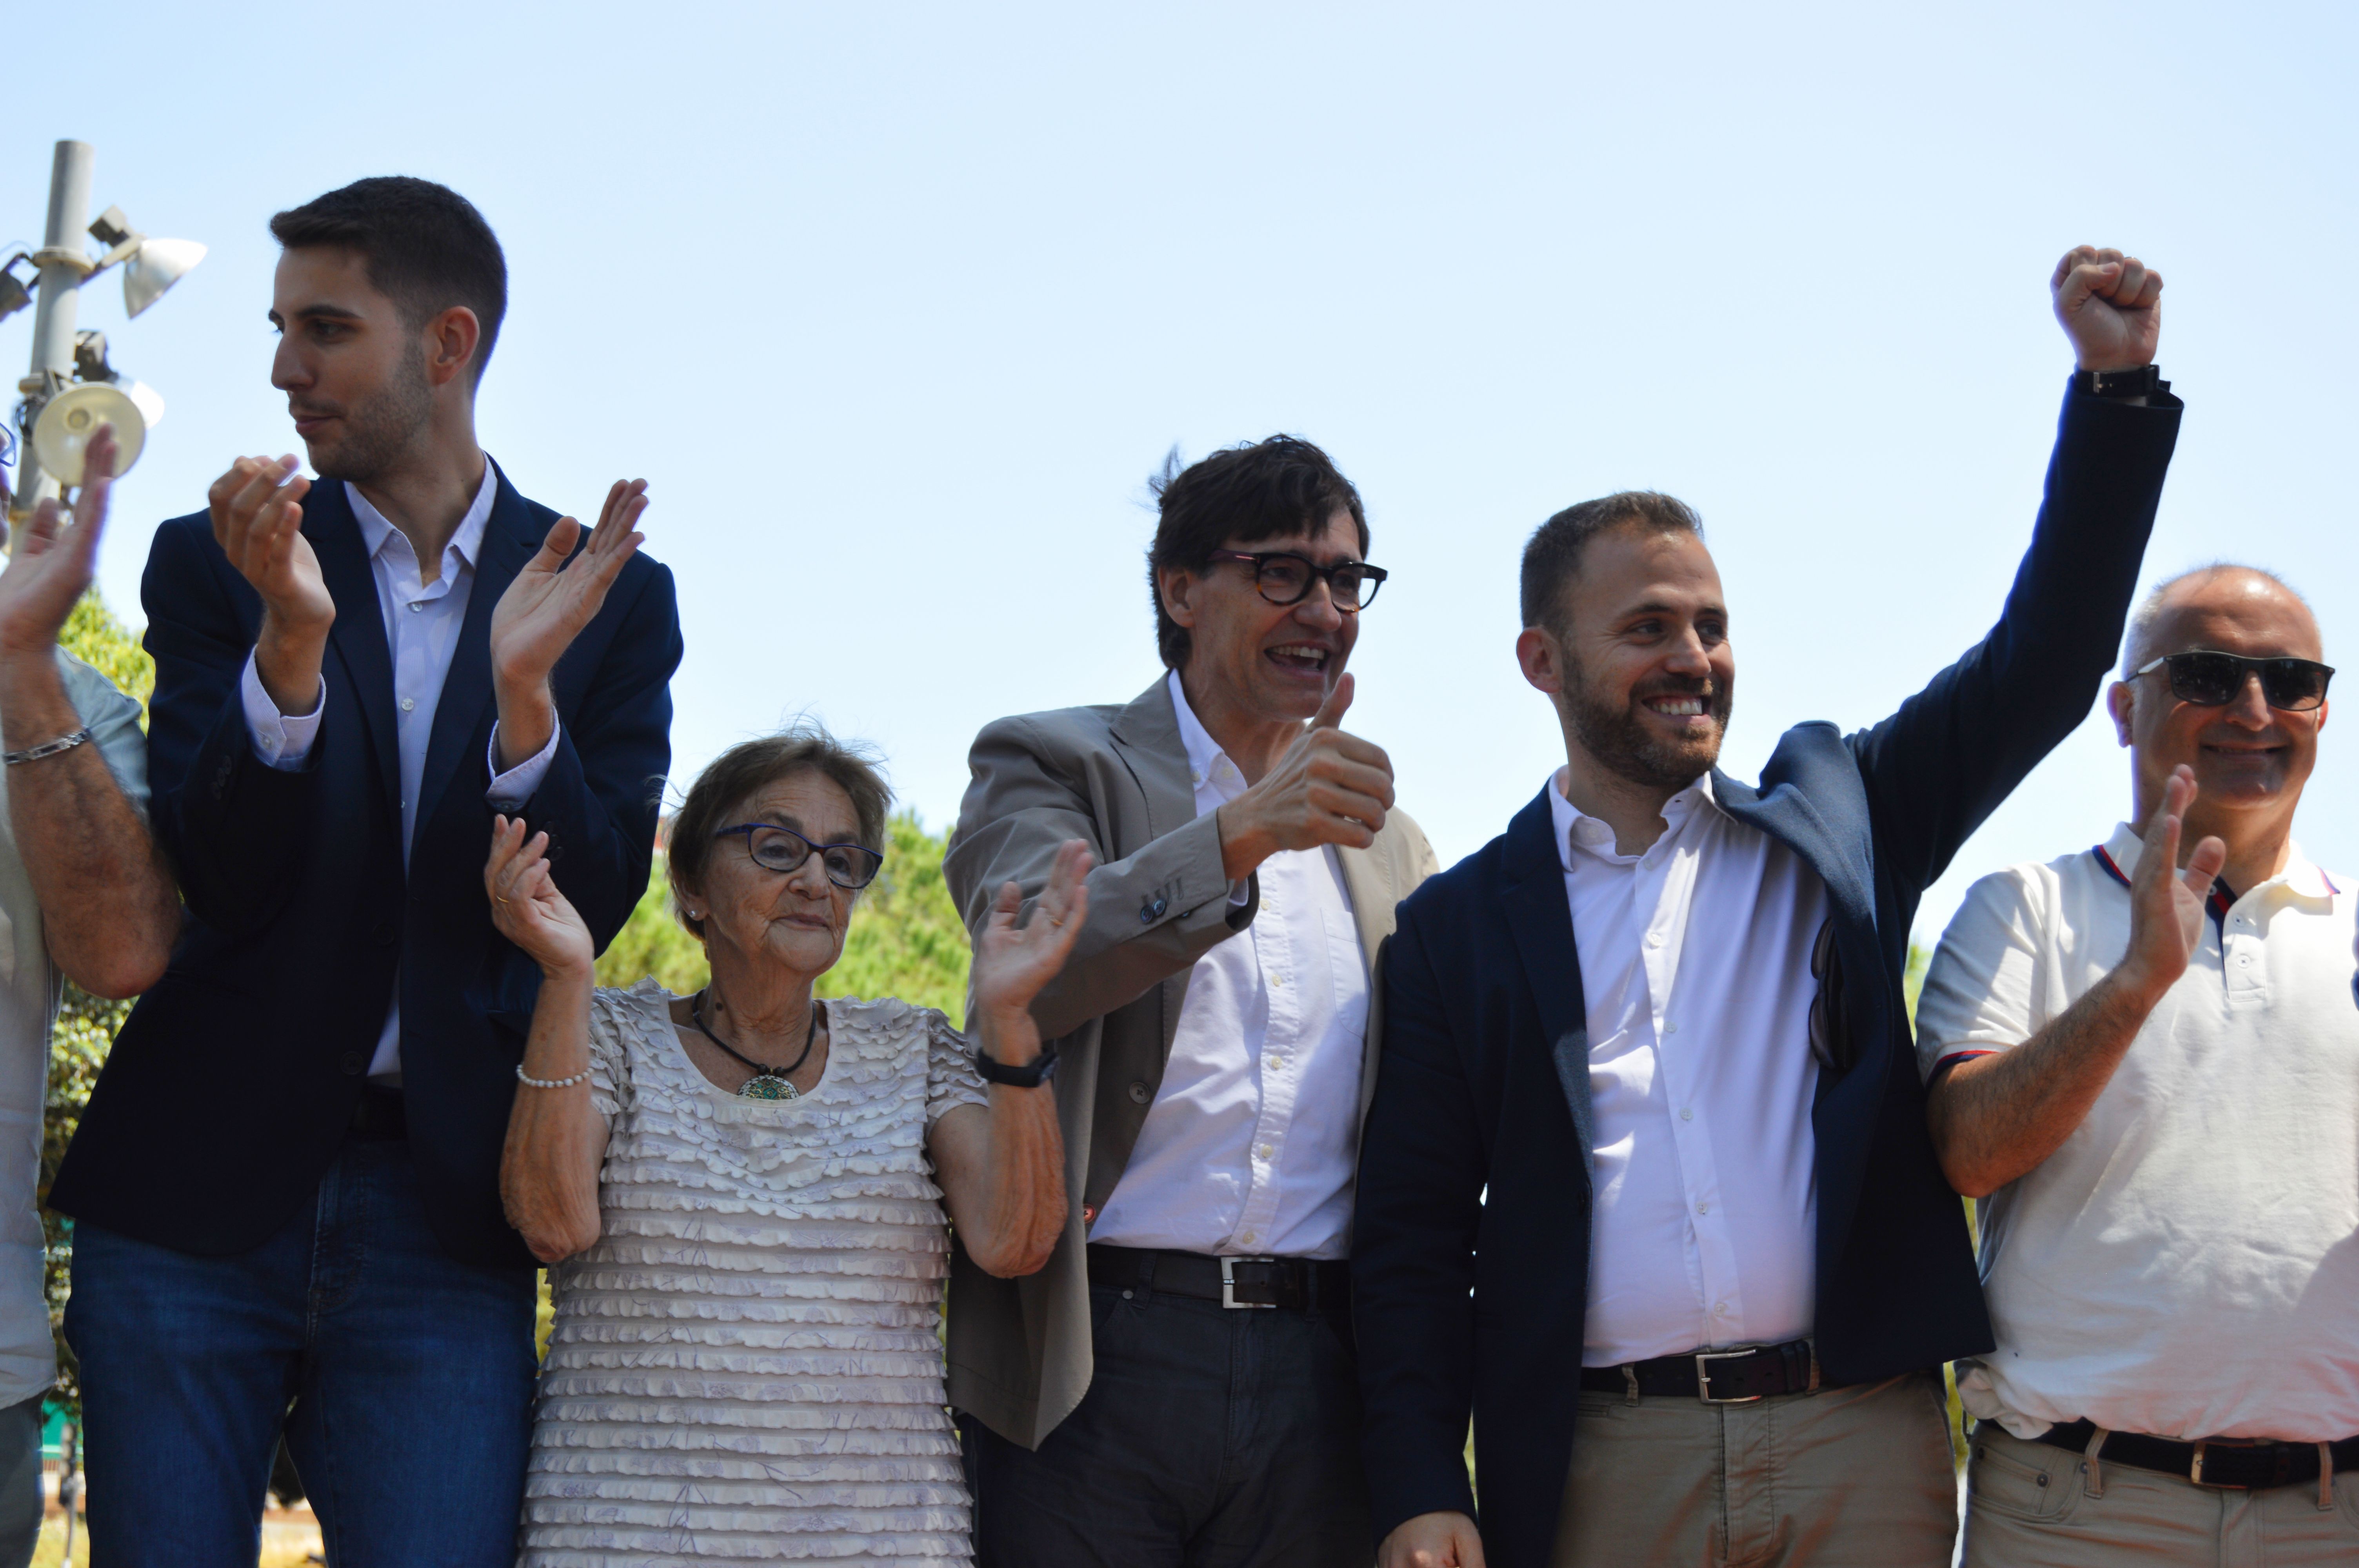 D'esquerra a dreta, David González, Cristina Real, Salvador Illa i Carlos Cordón, del PSC. FOTO: Nora Muñoz Otero